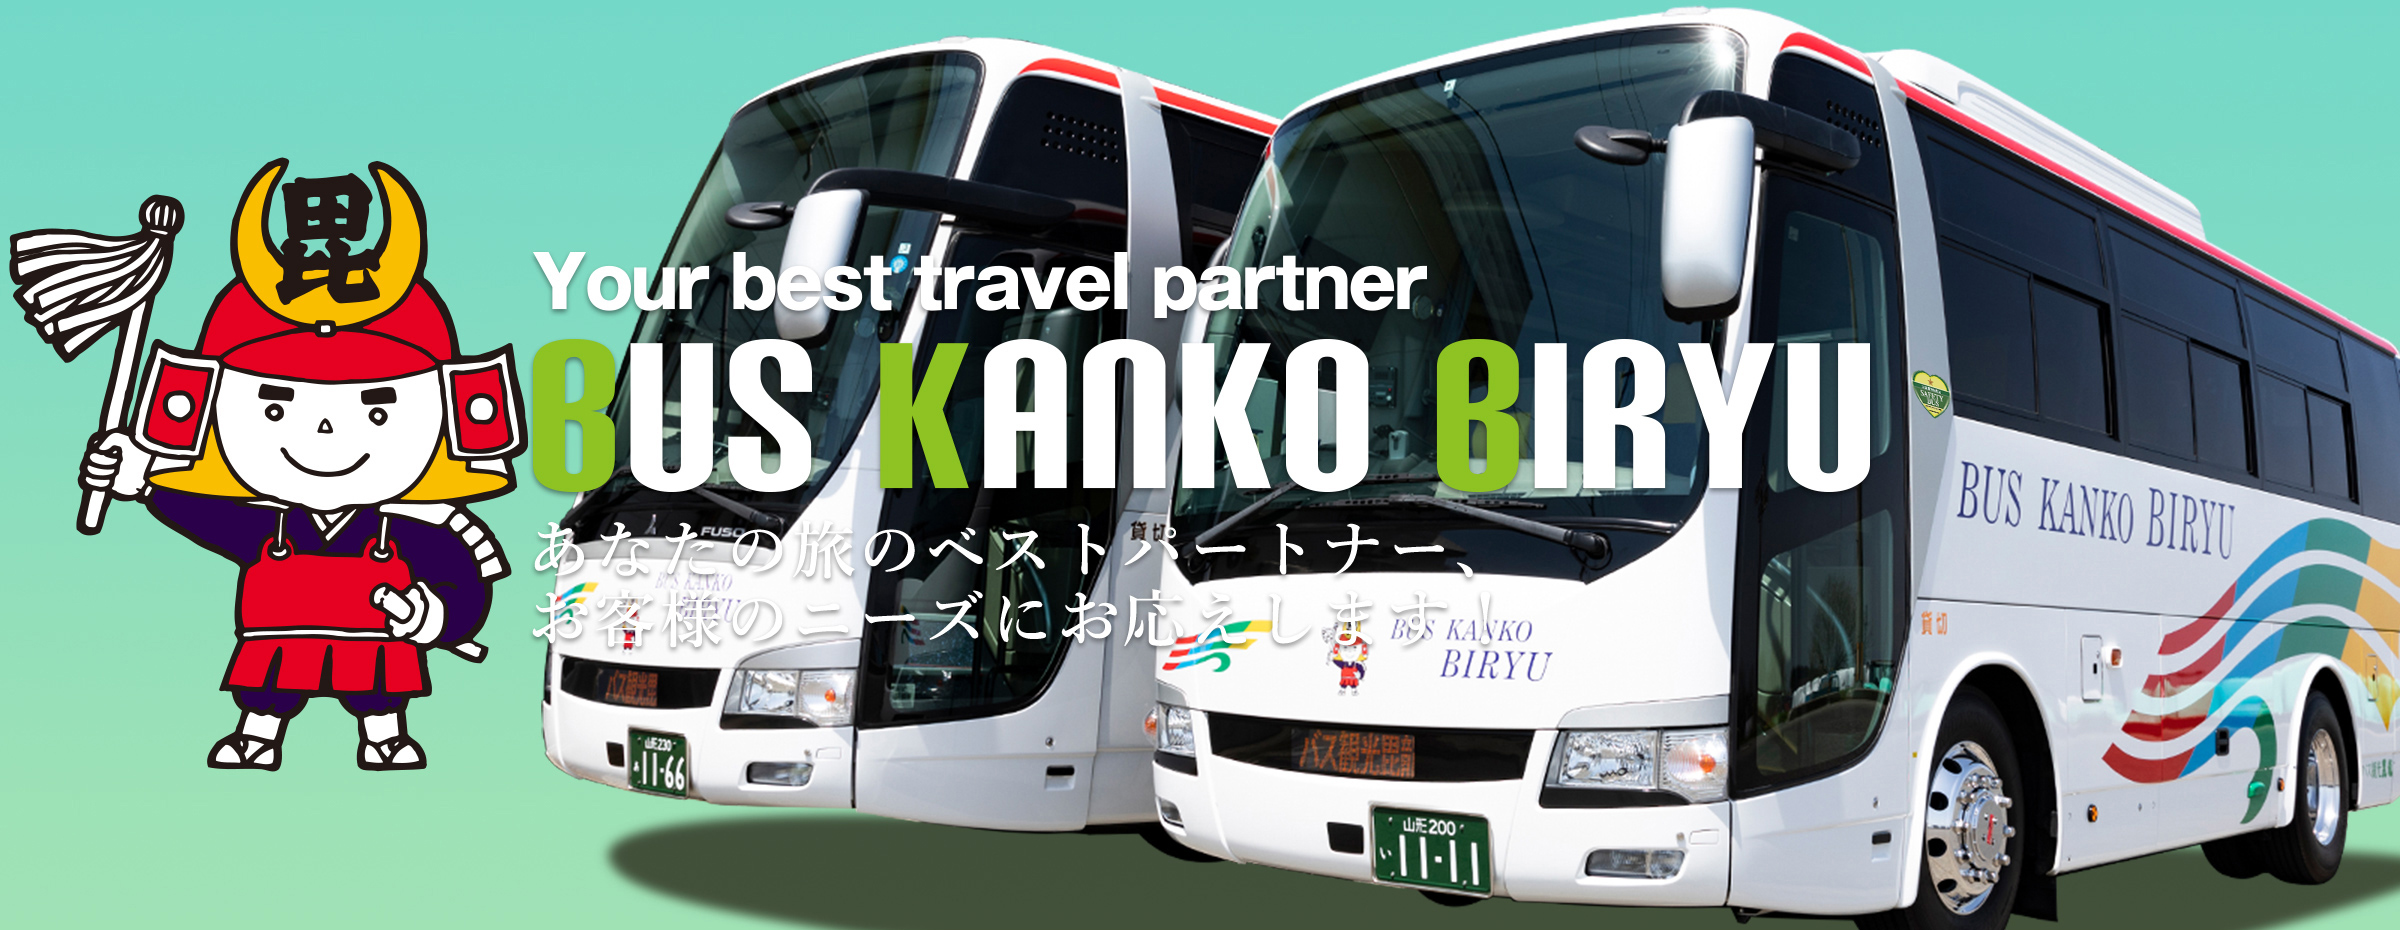 バス 米沢 有限会社三愛サービス 米沢市を本拠地とし、貸切バスサービスを提供